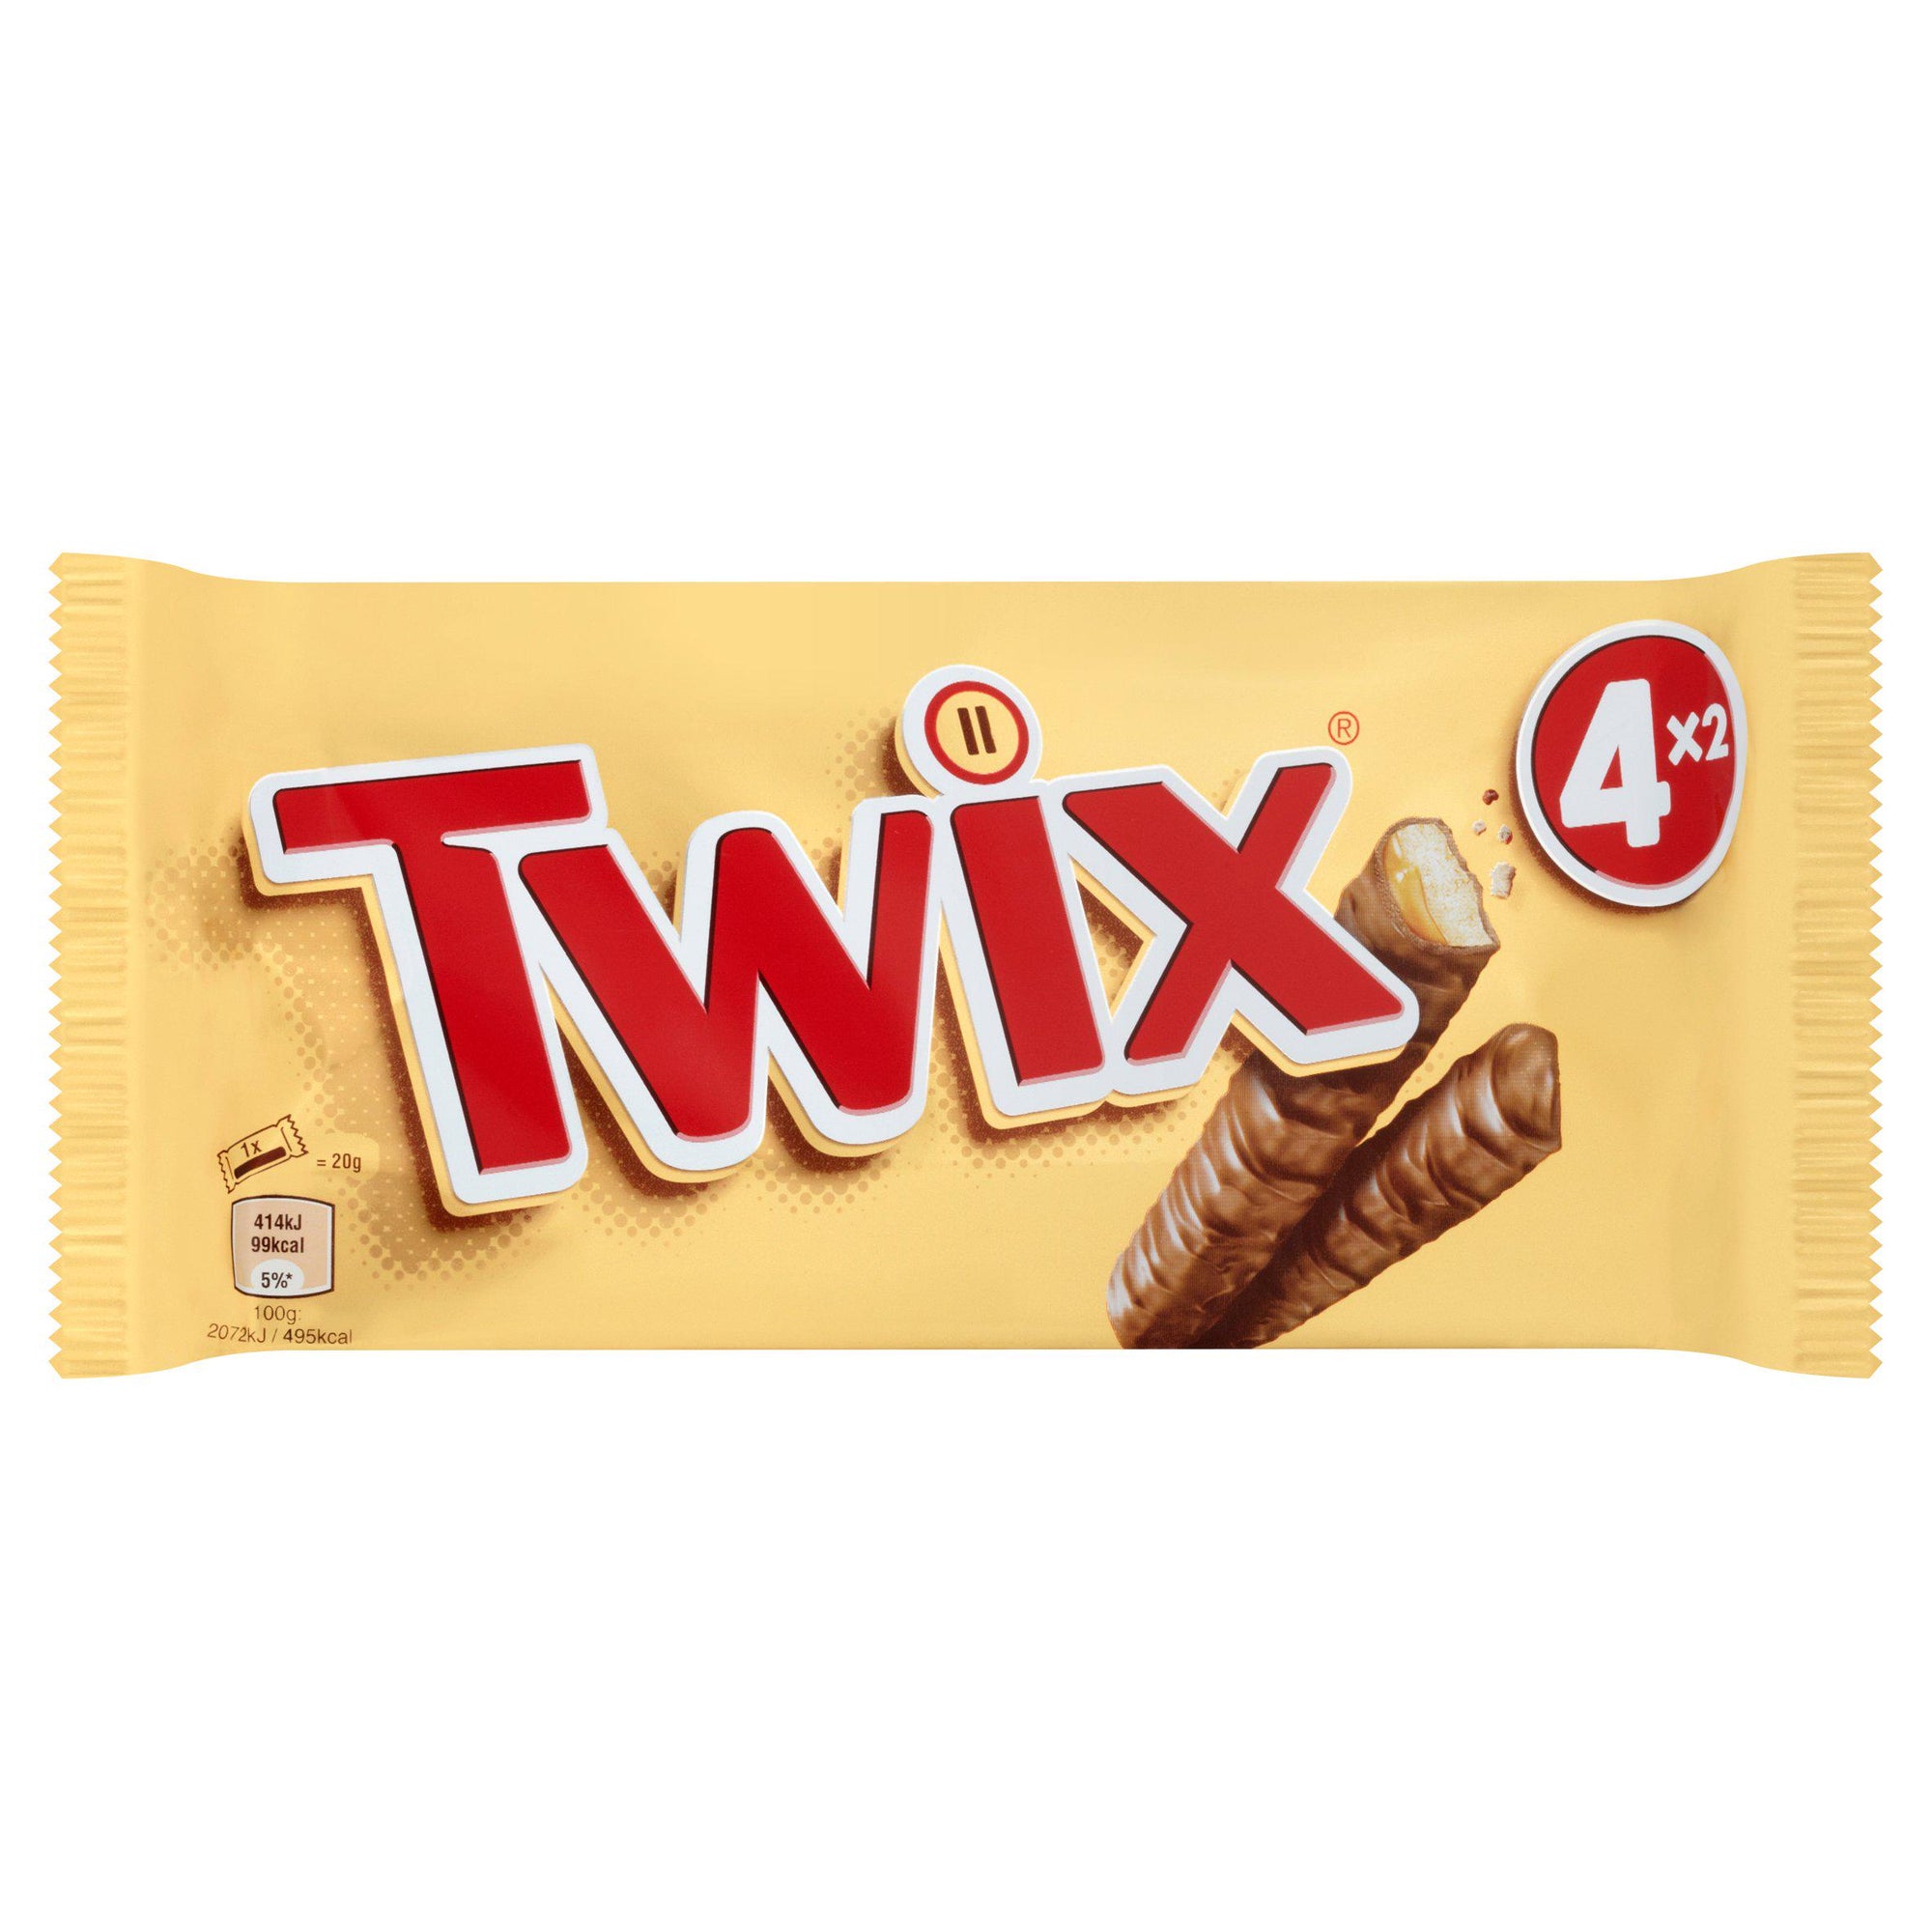 Twix Snacksize 4x2 pack*